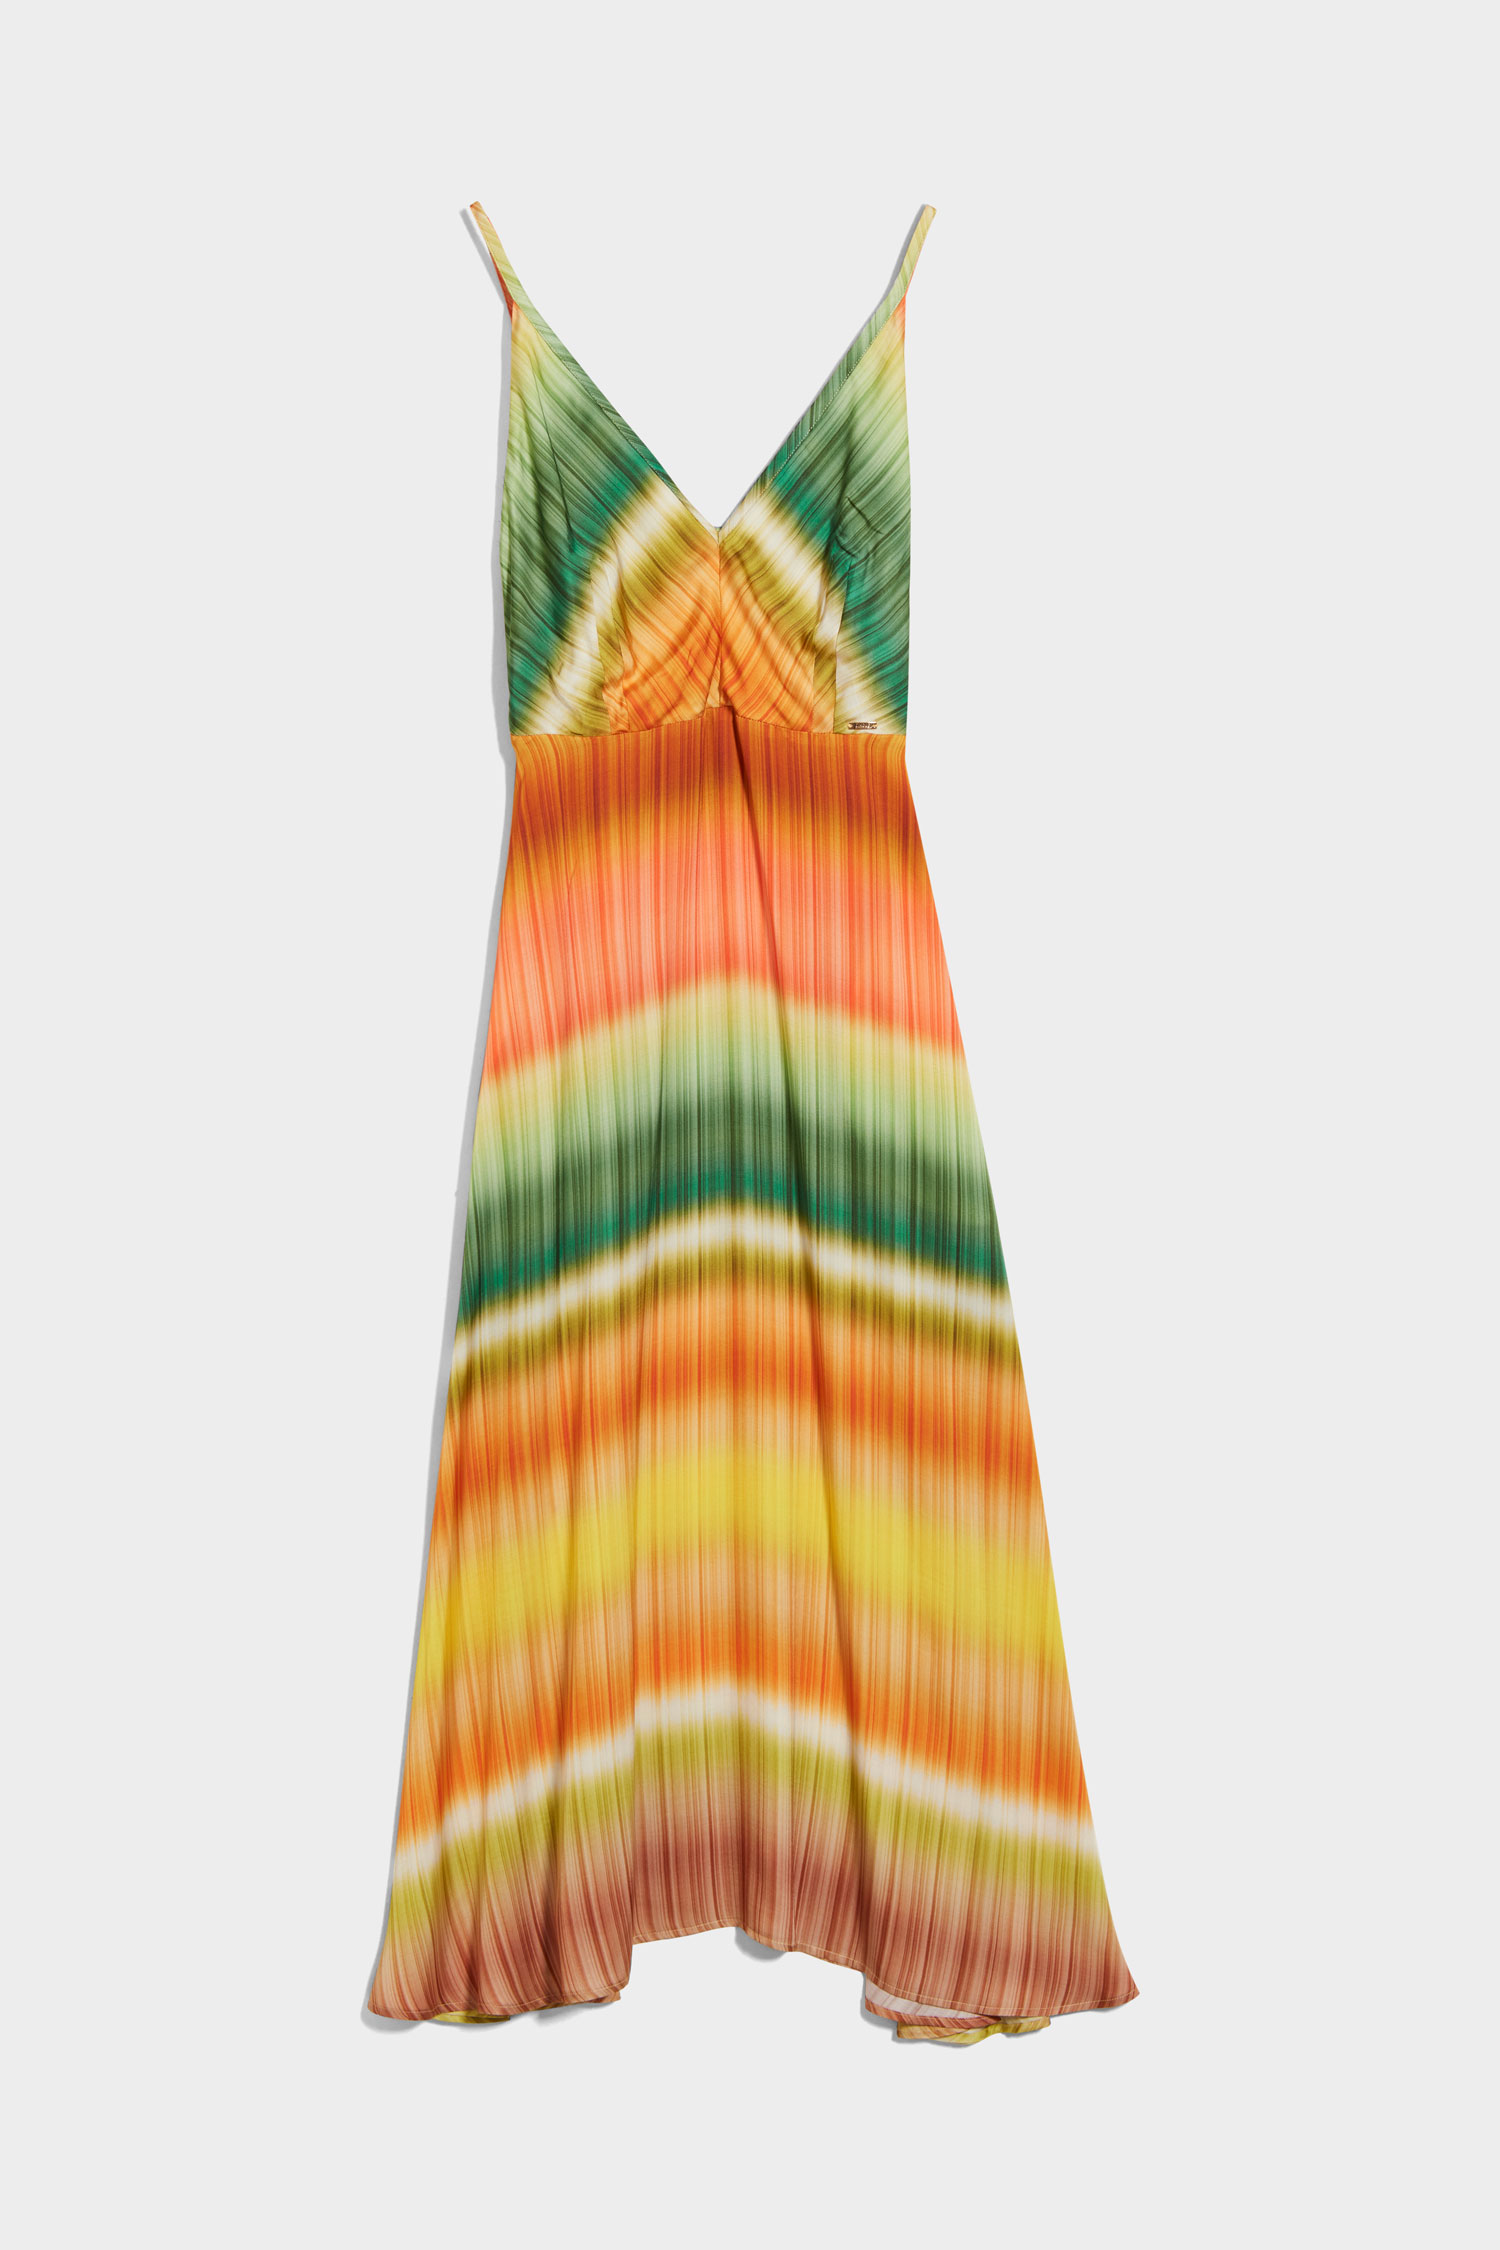 CINQUE 18022244 CIDESANO Kleid mit  Farbverlauf Orange/Grün